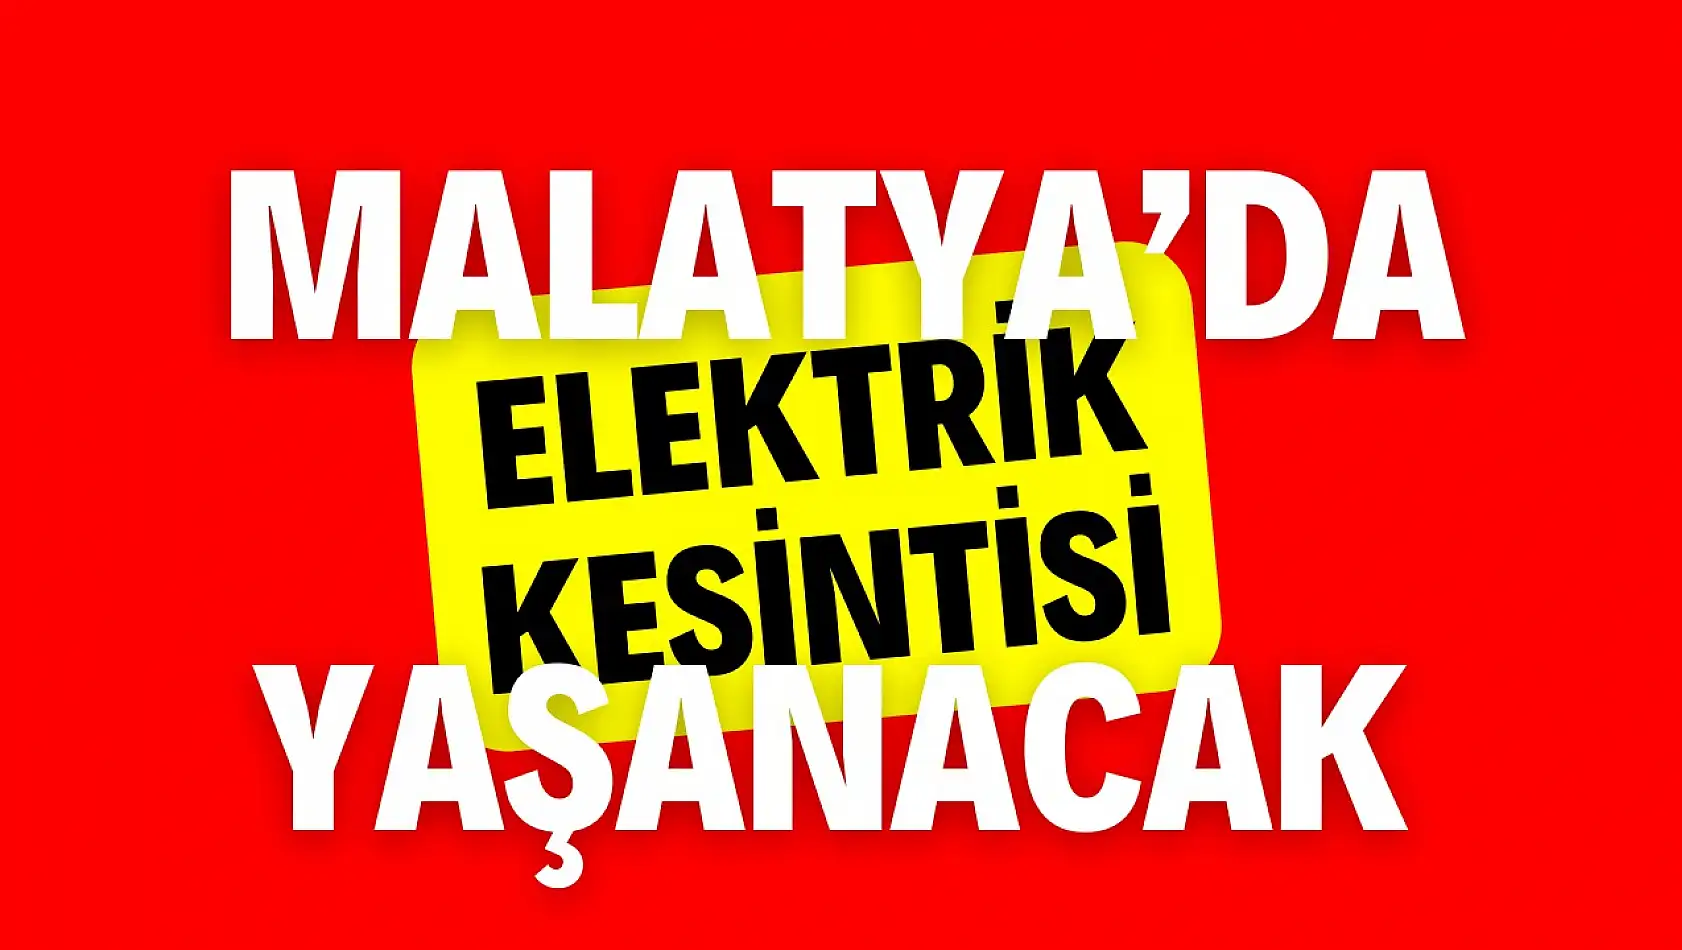 Malatya'da birçok mahallede elektrik kesintisi yaşanacak